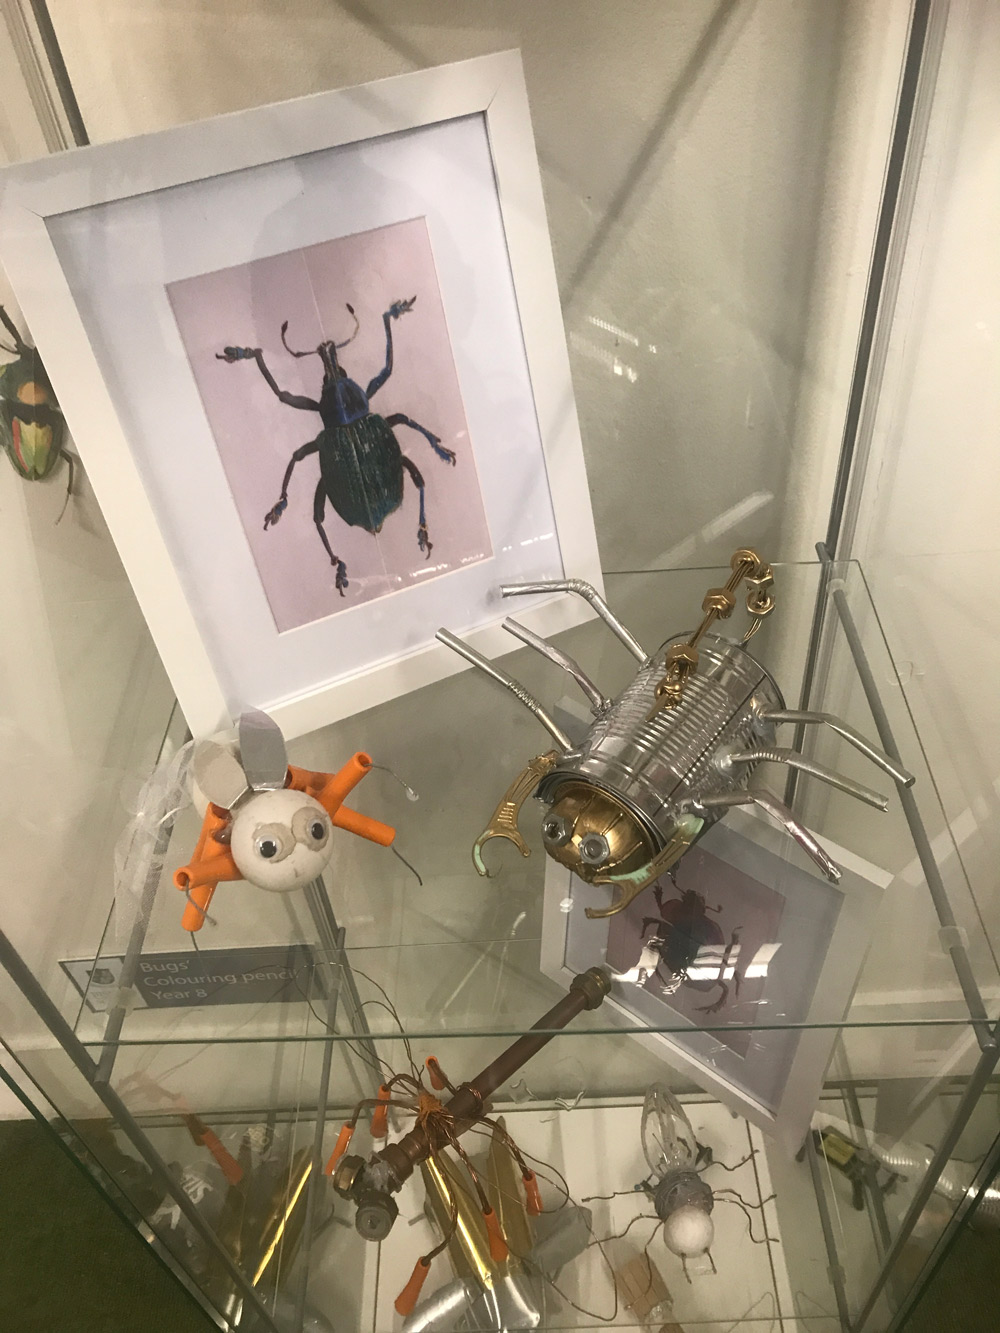 Bug display